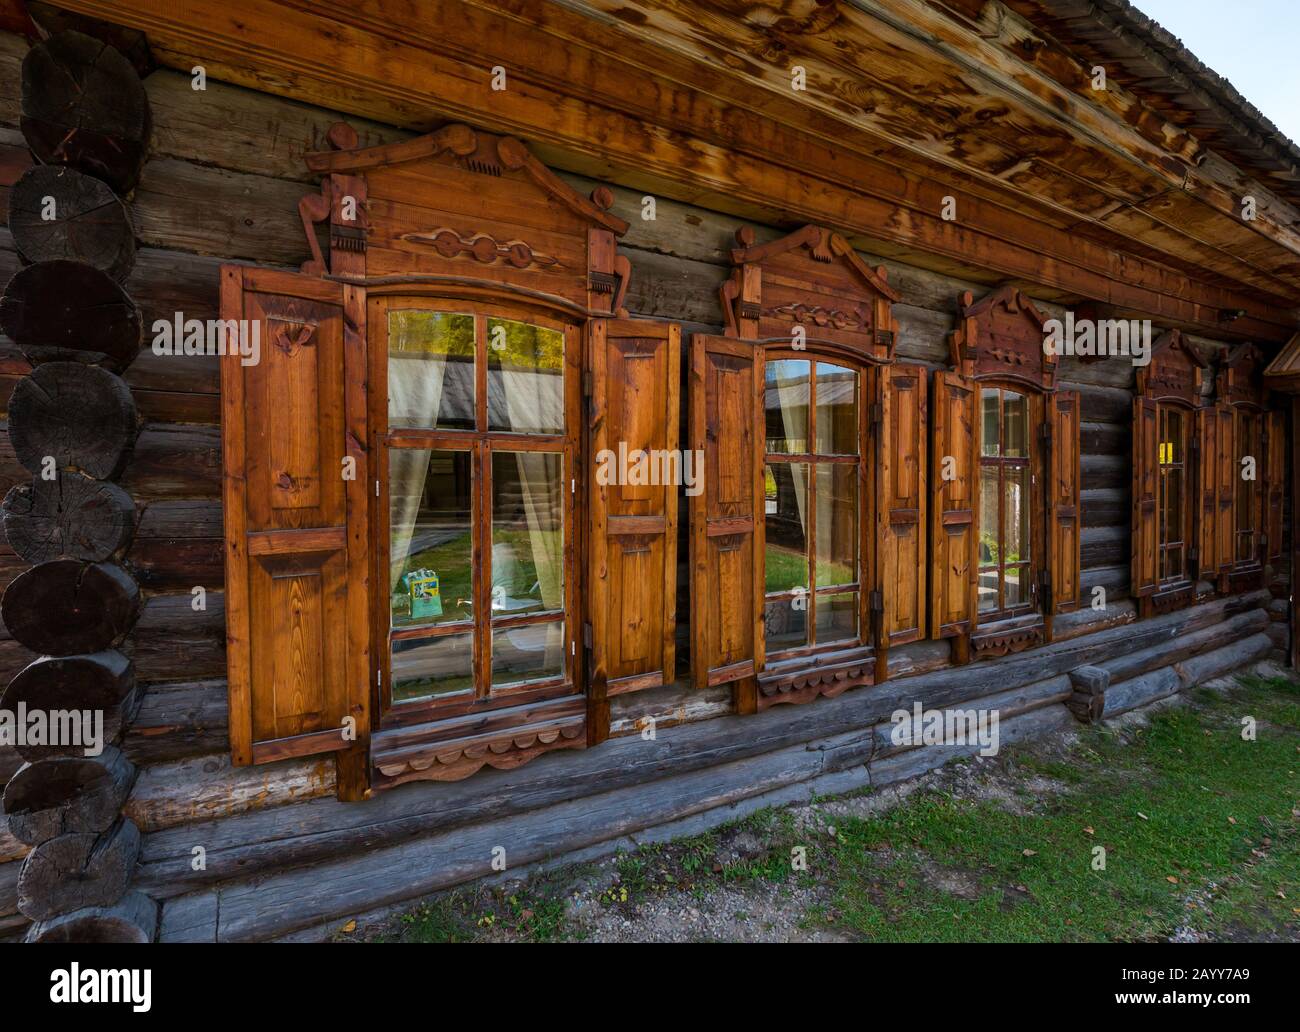 Chalet traditionnel en bois à l'ancienne avec volets de fenêtre, Musée Taltsy d'architecture en bois, région d'Irkoutsk, Sibérie, Russie Banque D'Images